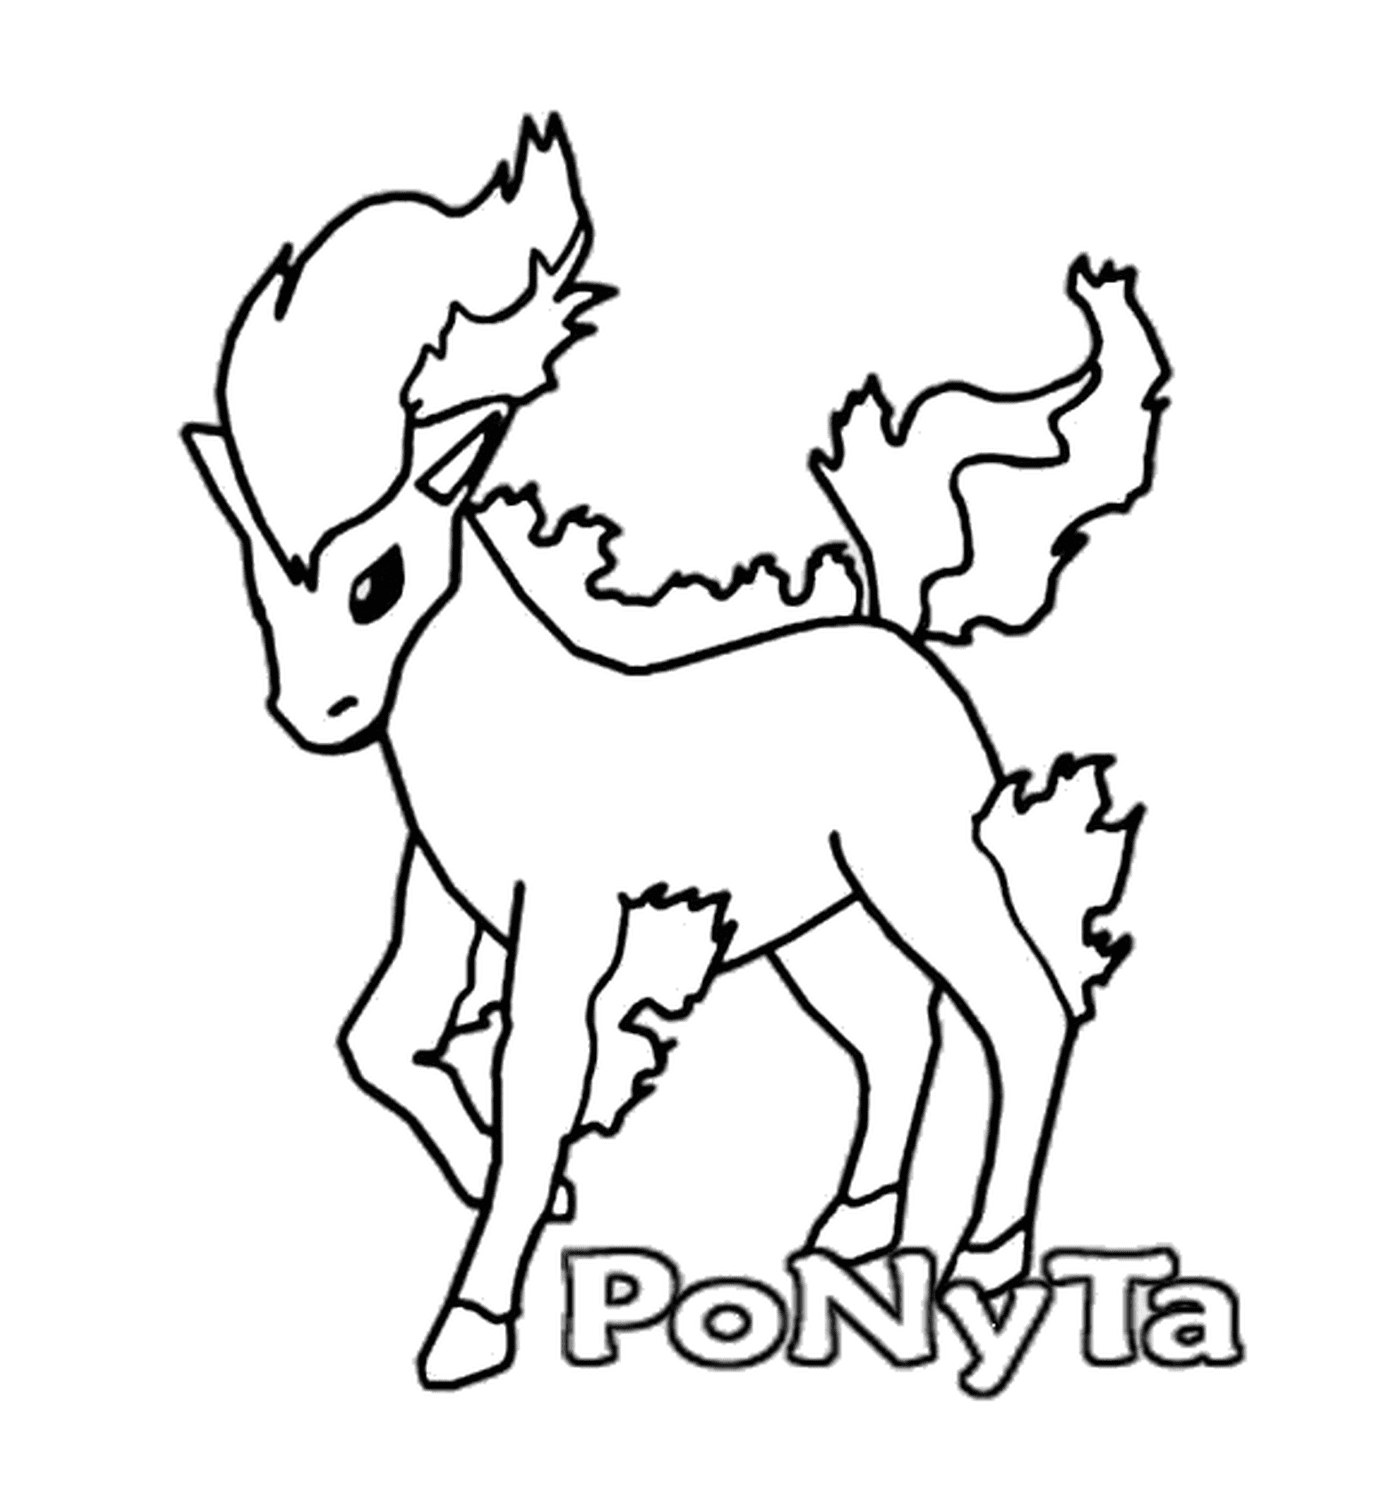  Понита : Элегантный пожарный конь 